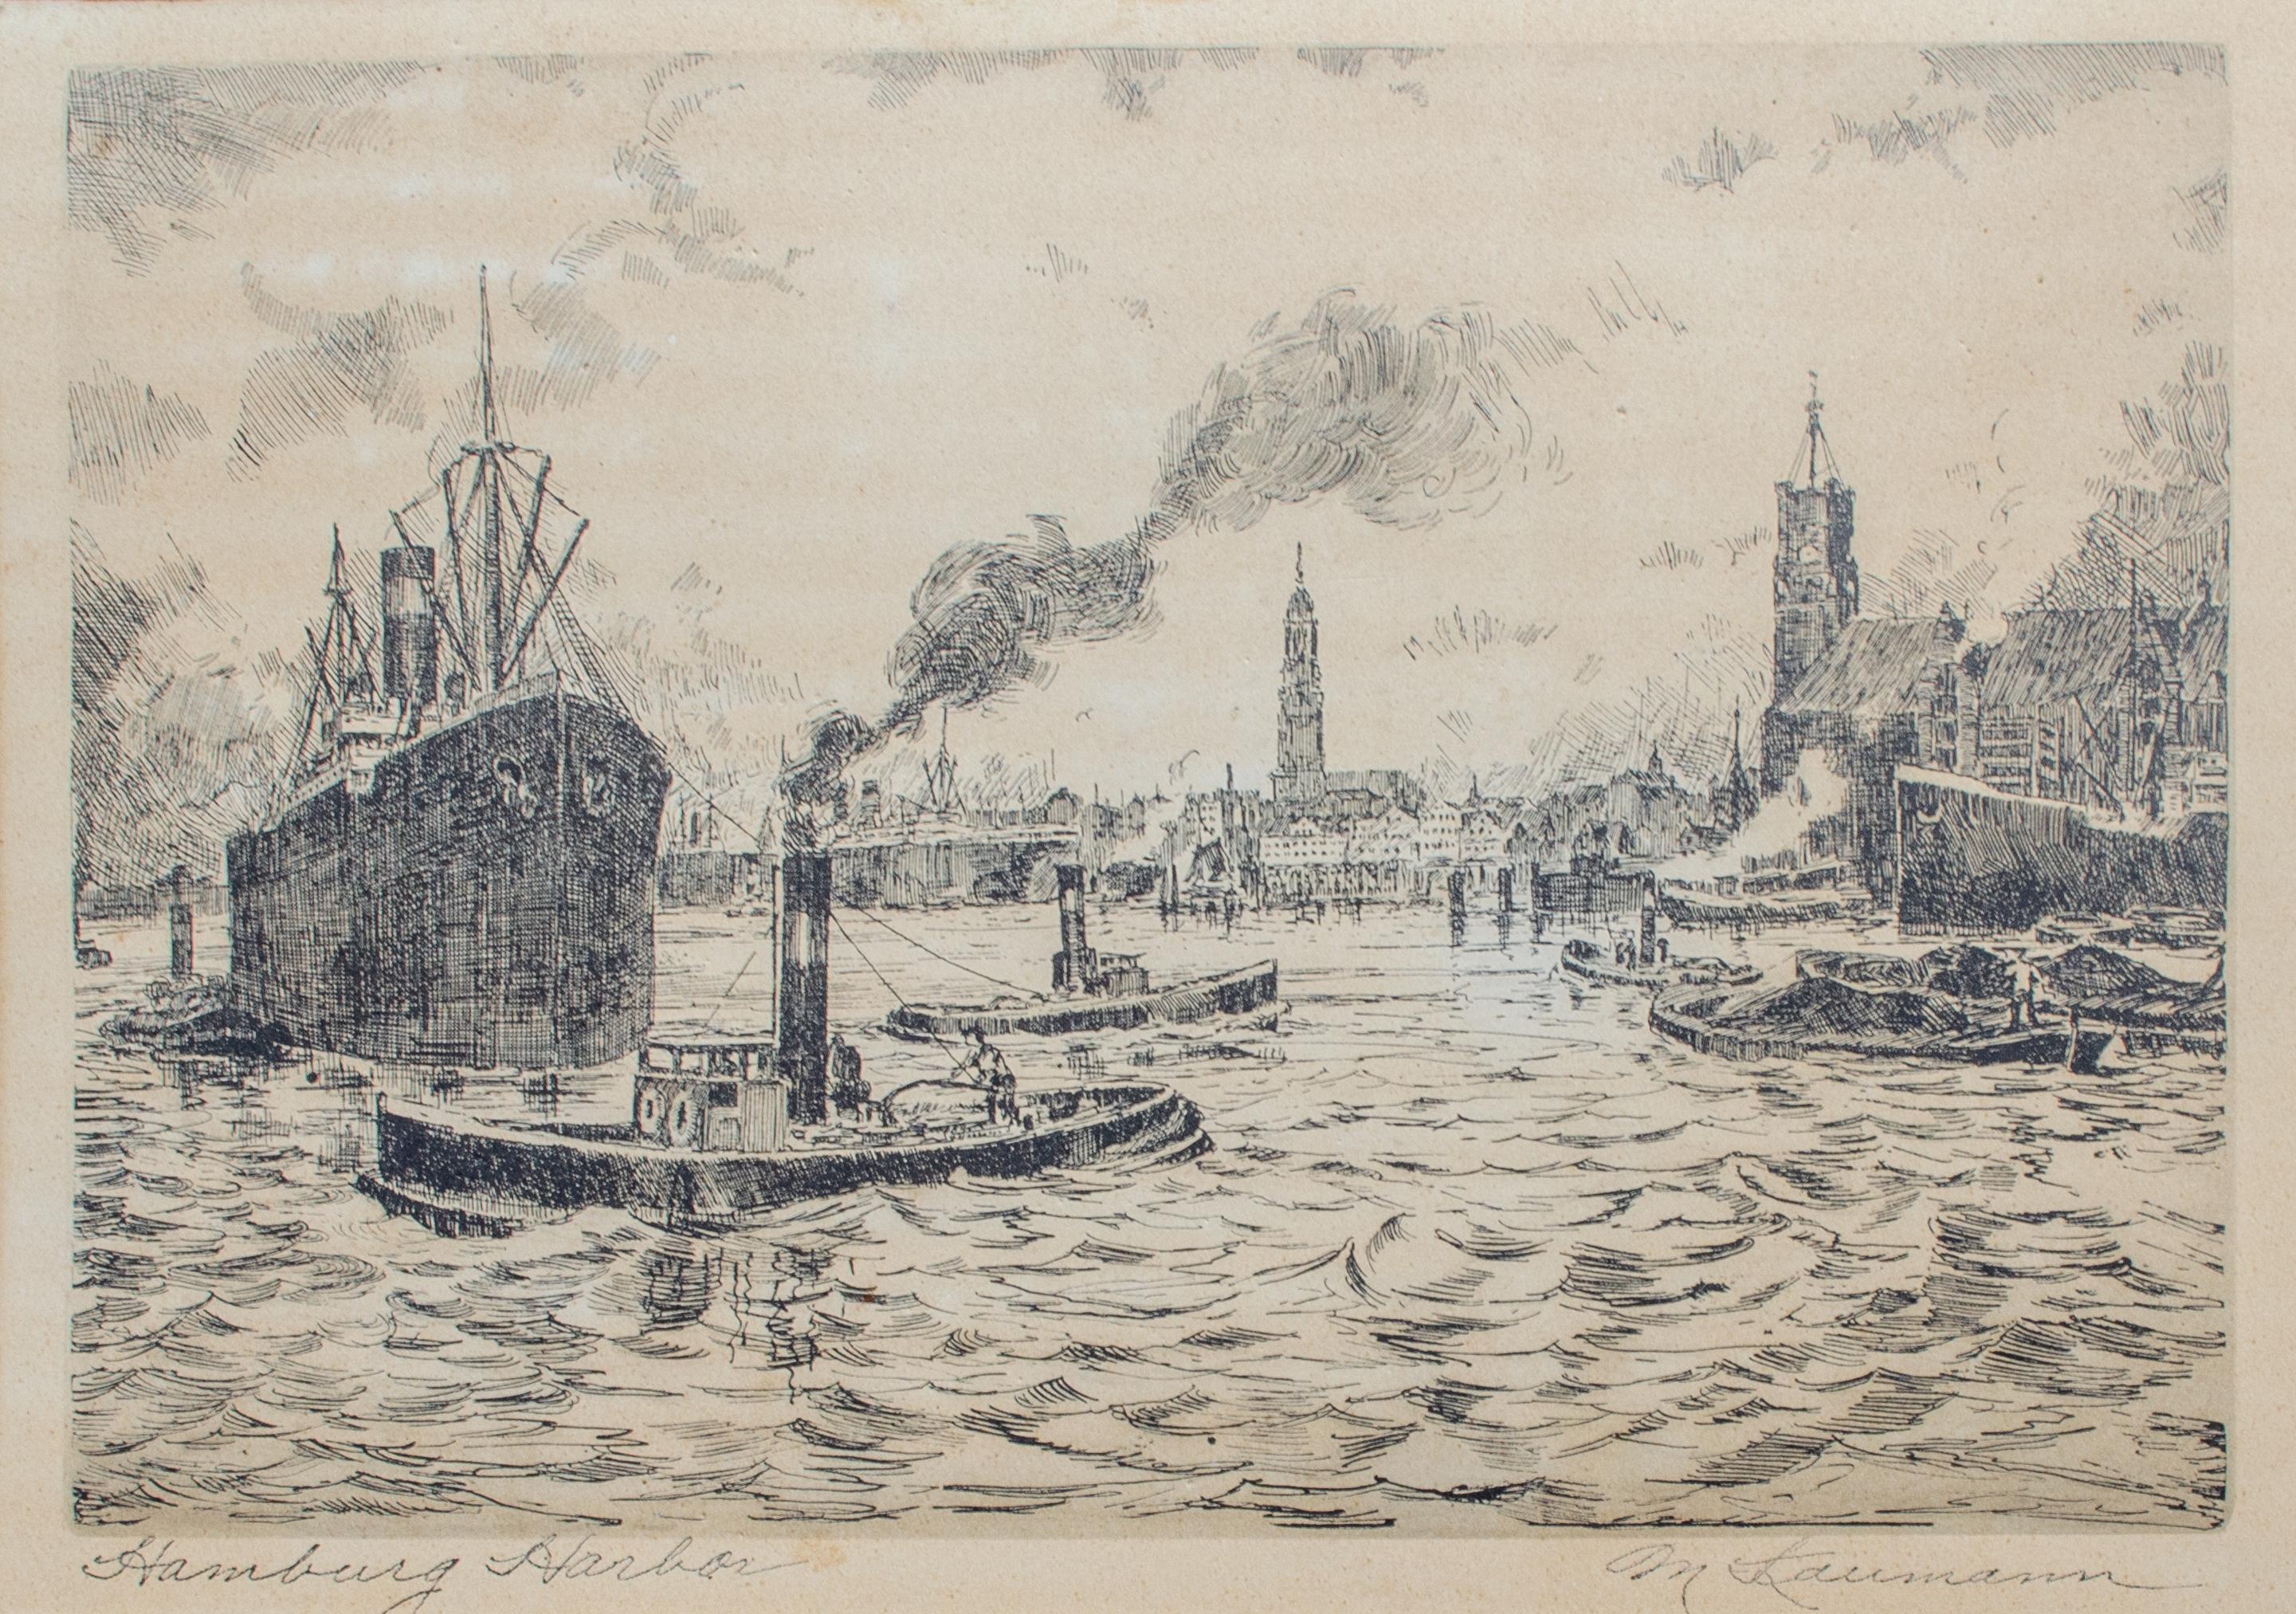 Hans Kaumann (Allemand, 20e siècle)
Port de Hambourg, C.I.C., 1920
Gravure à l'eau-forte
12 x 16 in.

Cette estampe historique représentant le port de Hambourg offre un regard sur le passé, présentant une vue de ce centre maritime emblématique